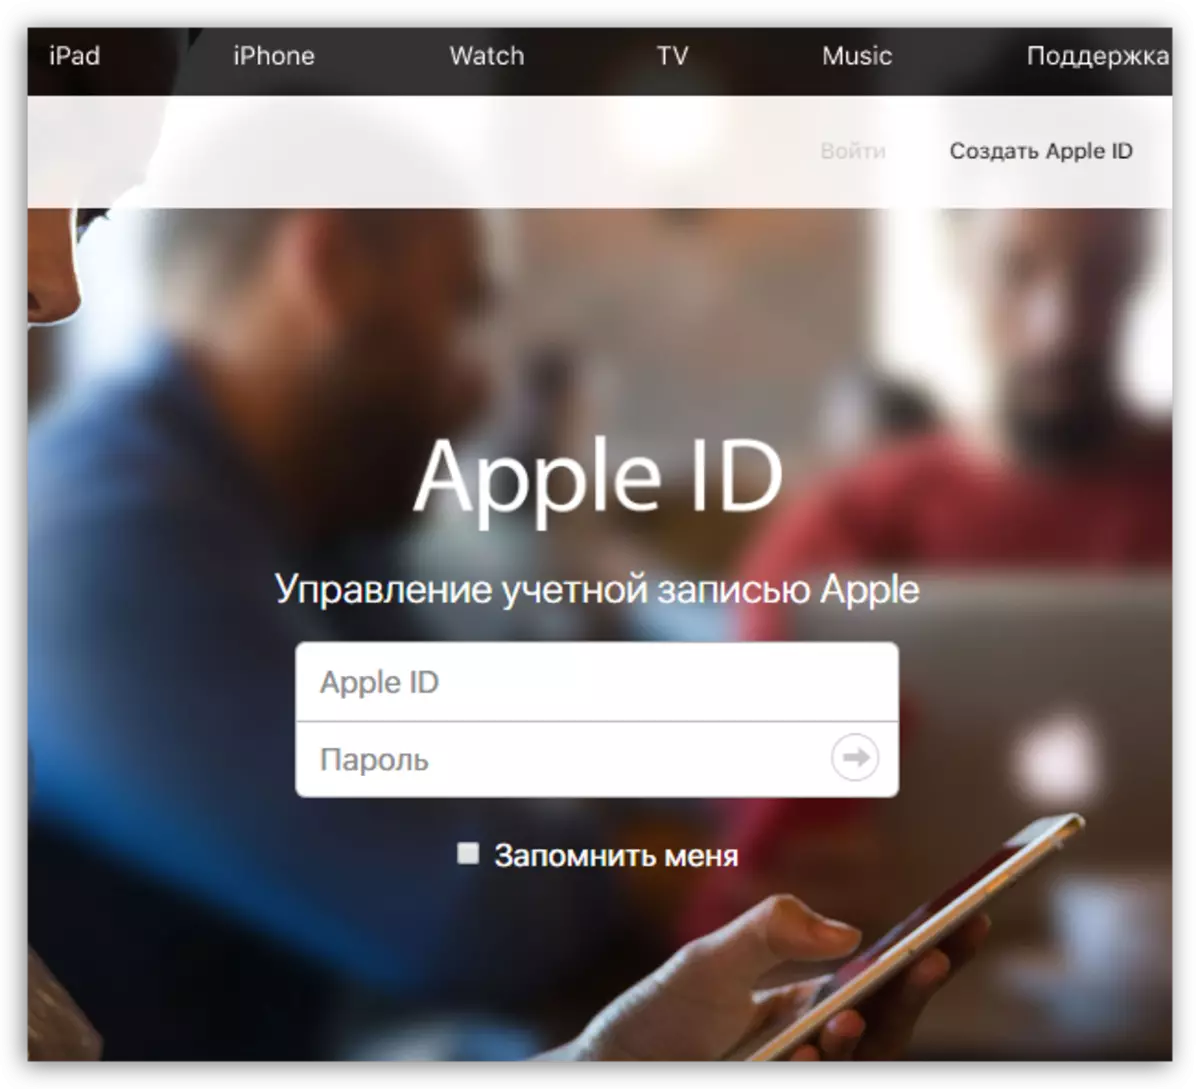 Authorization on Apple ID website